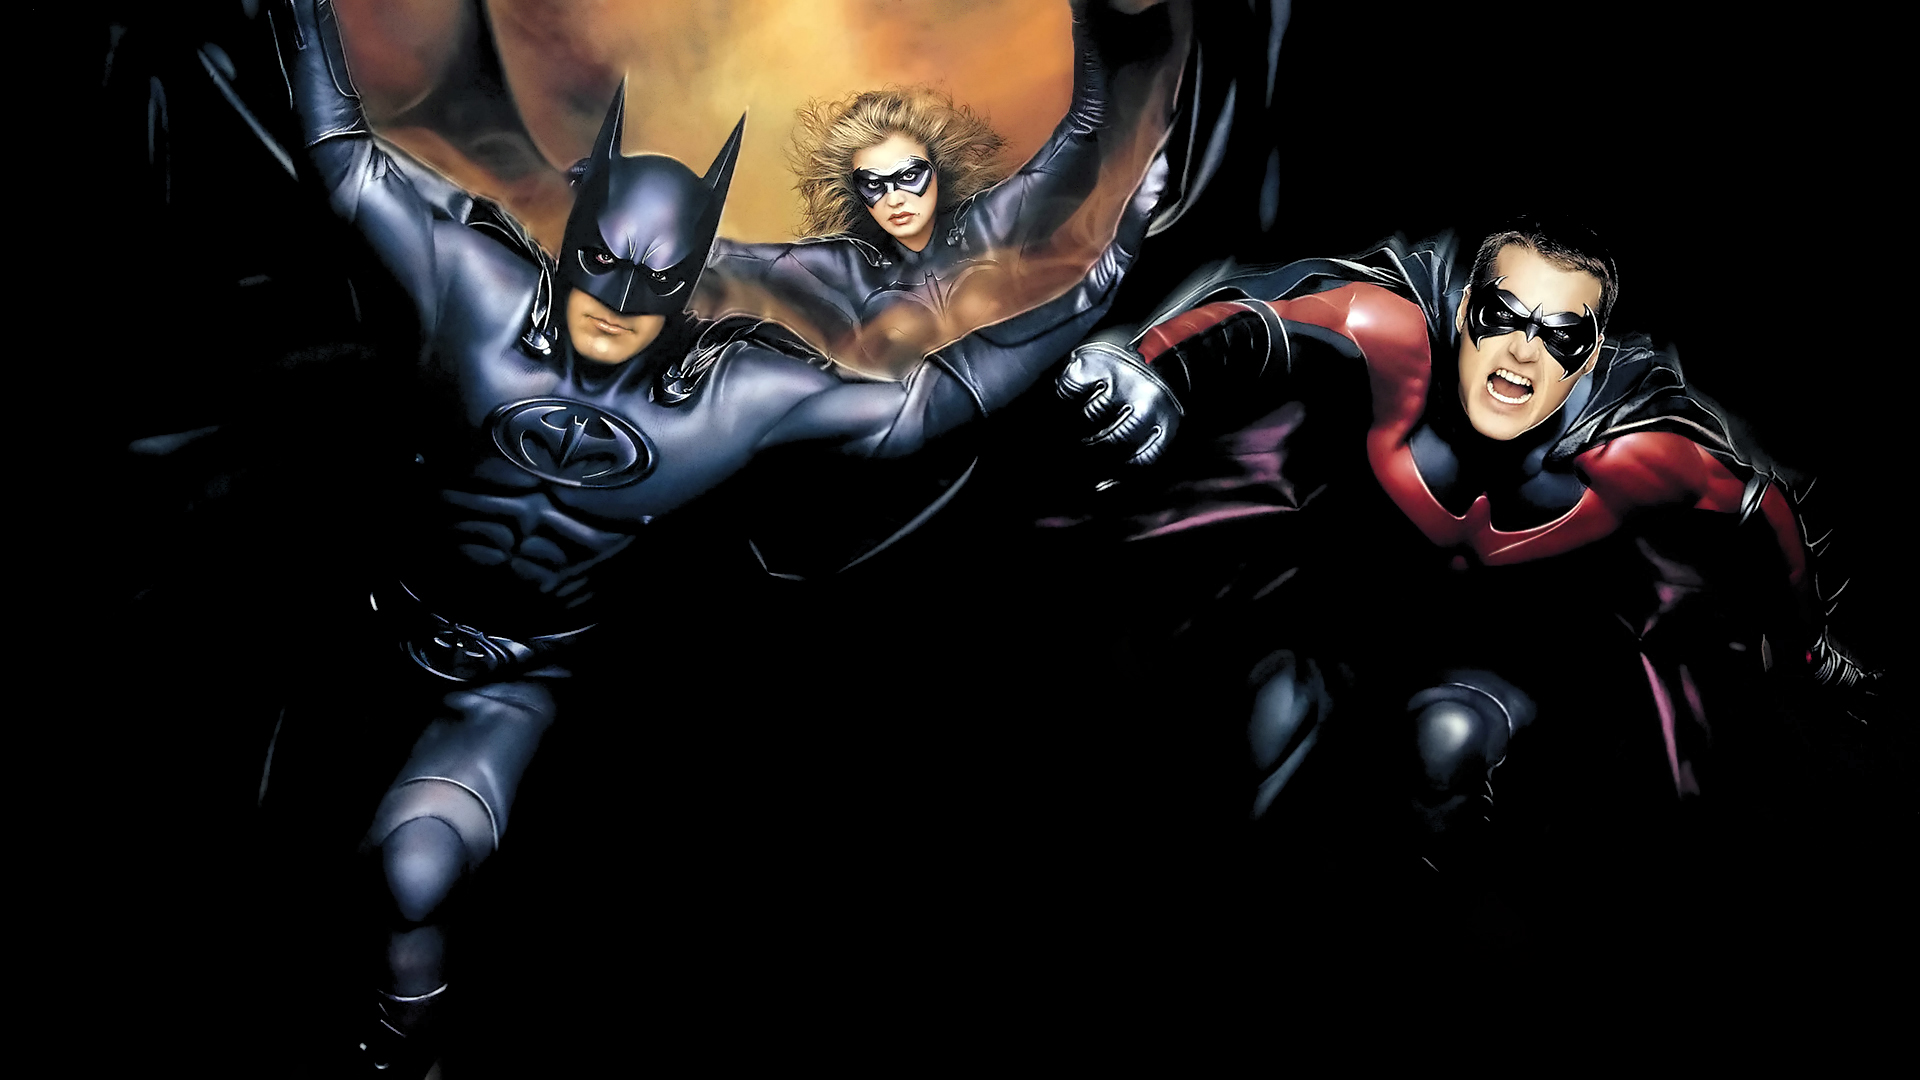 fond d'écran batman et robin,personnage fictif,super héros,homme chauve souris,supervillain,ligue de justice